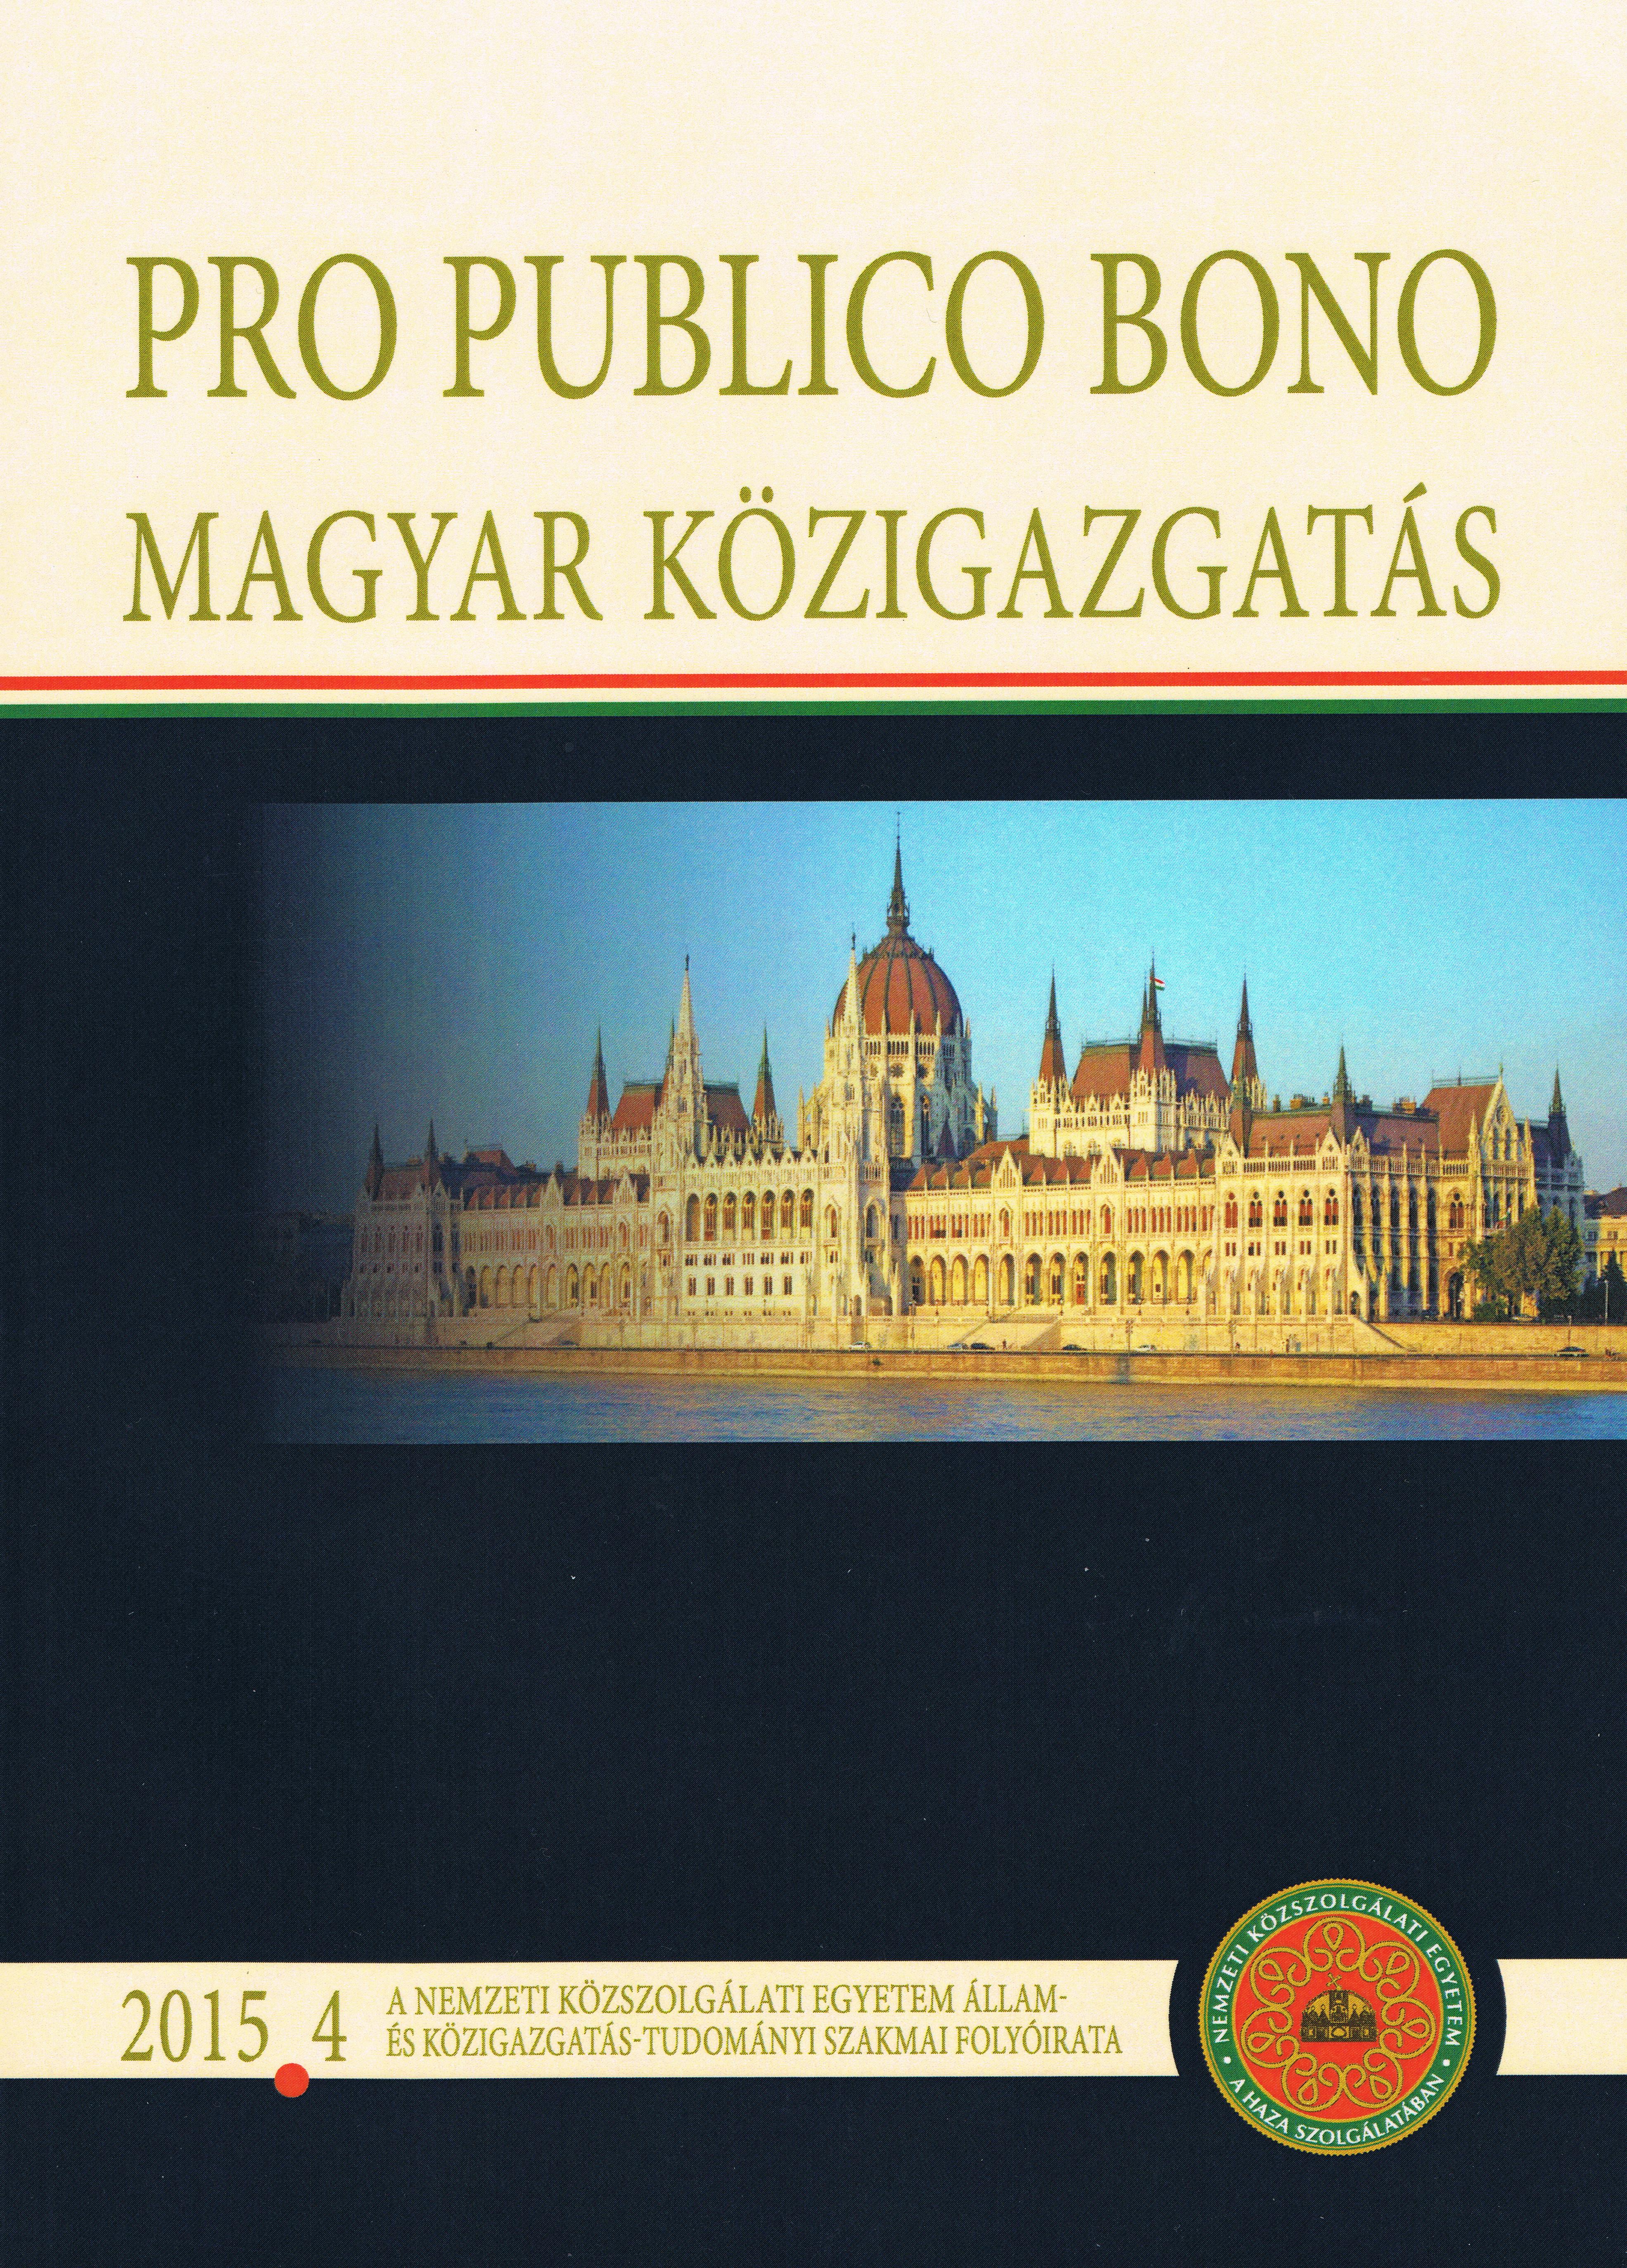 UFP-UV publicação húngara